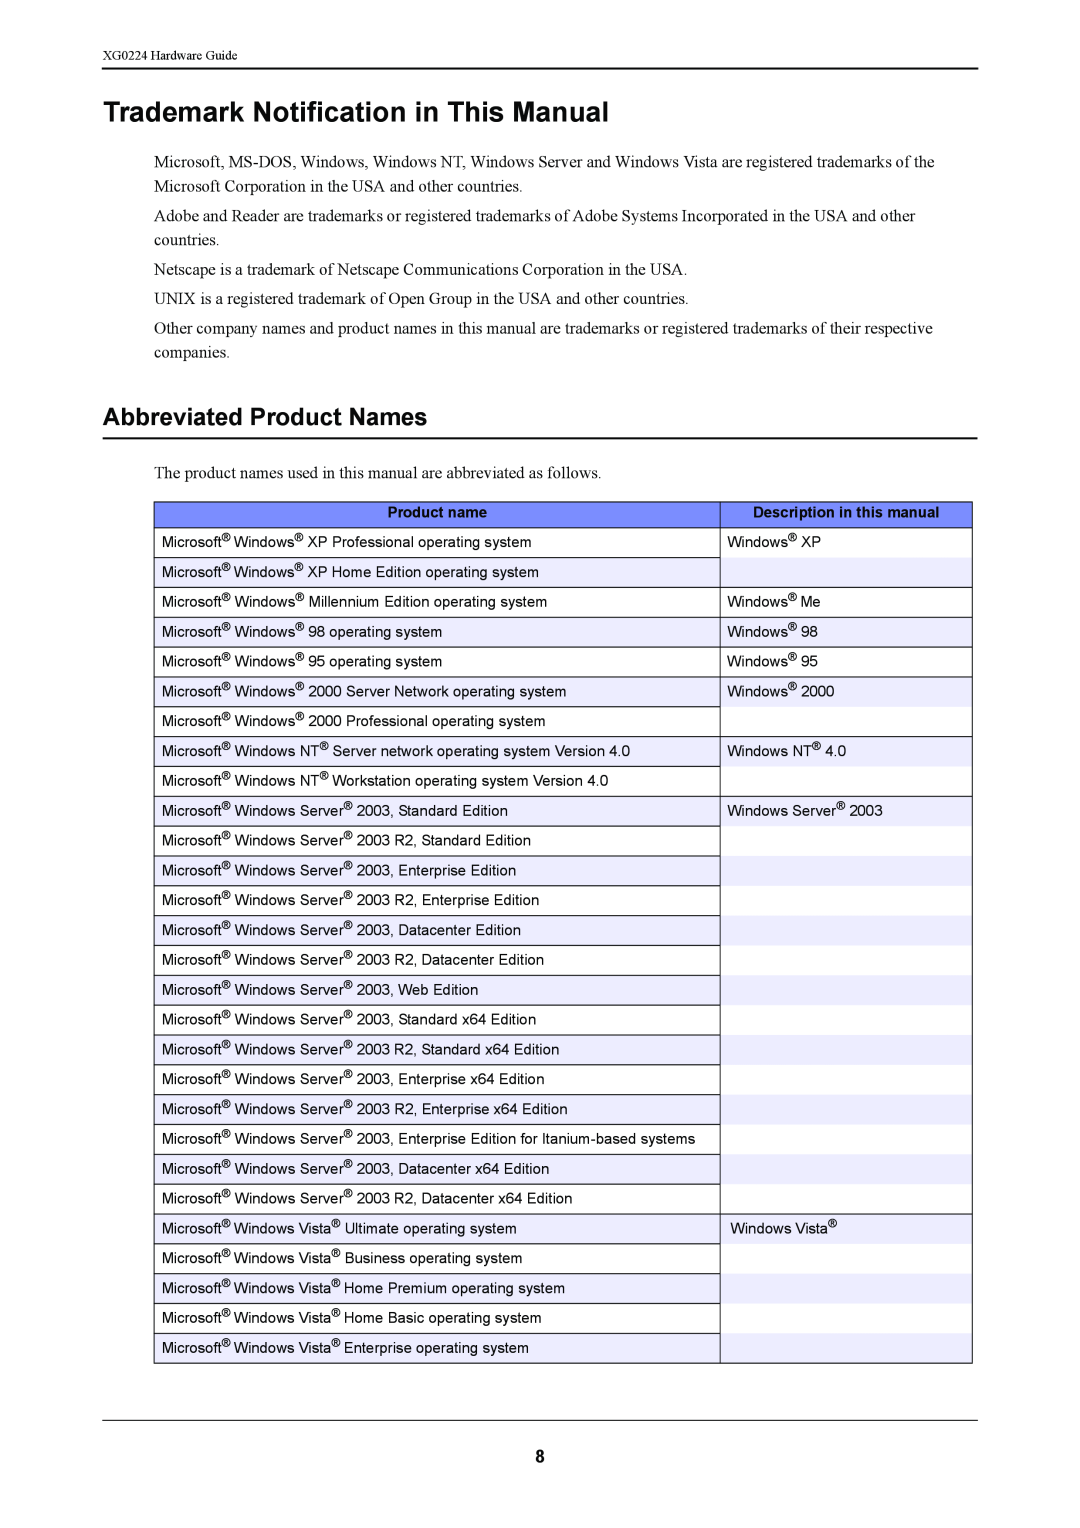 Fujitsu XG0224 manual Trademark Notification in This Manual, Abbreviated Product Names 